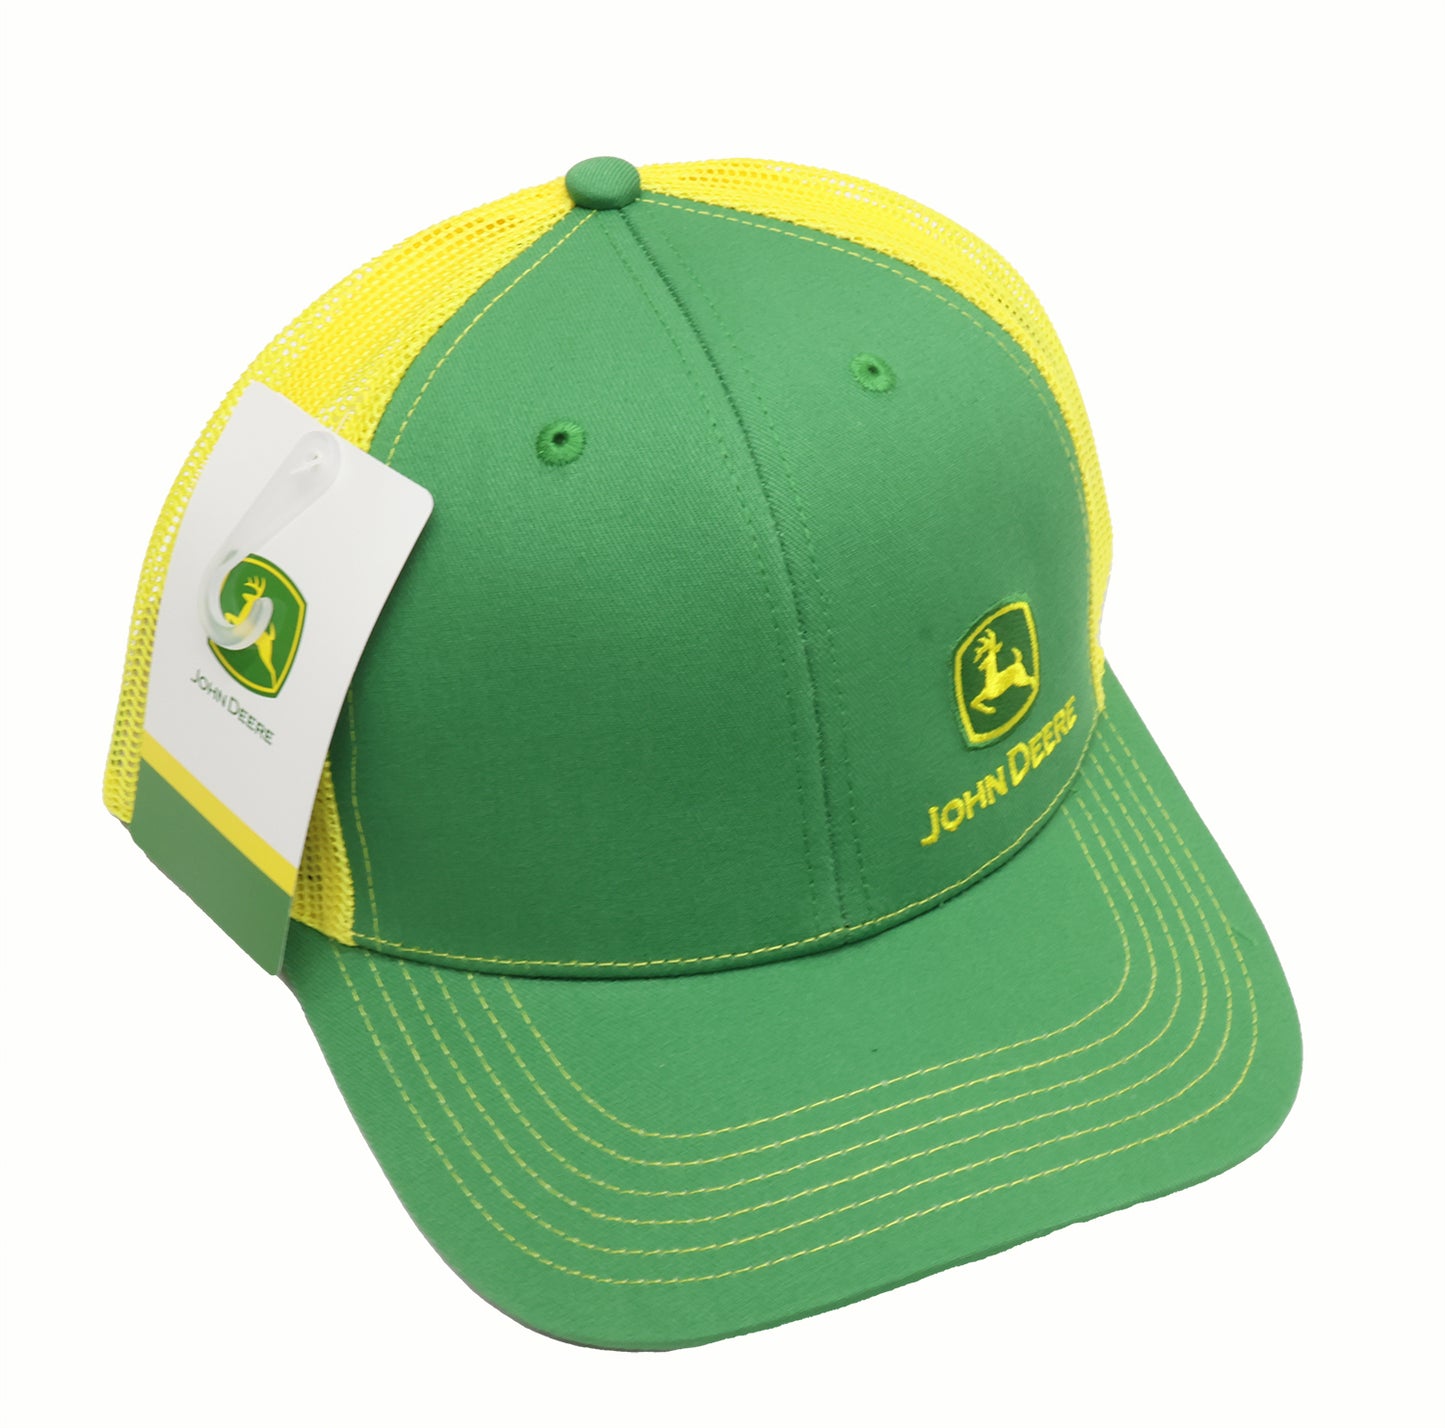 John Deere Men's Green & Yellow Embro Cap/Hat - LP86118